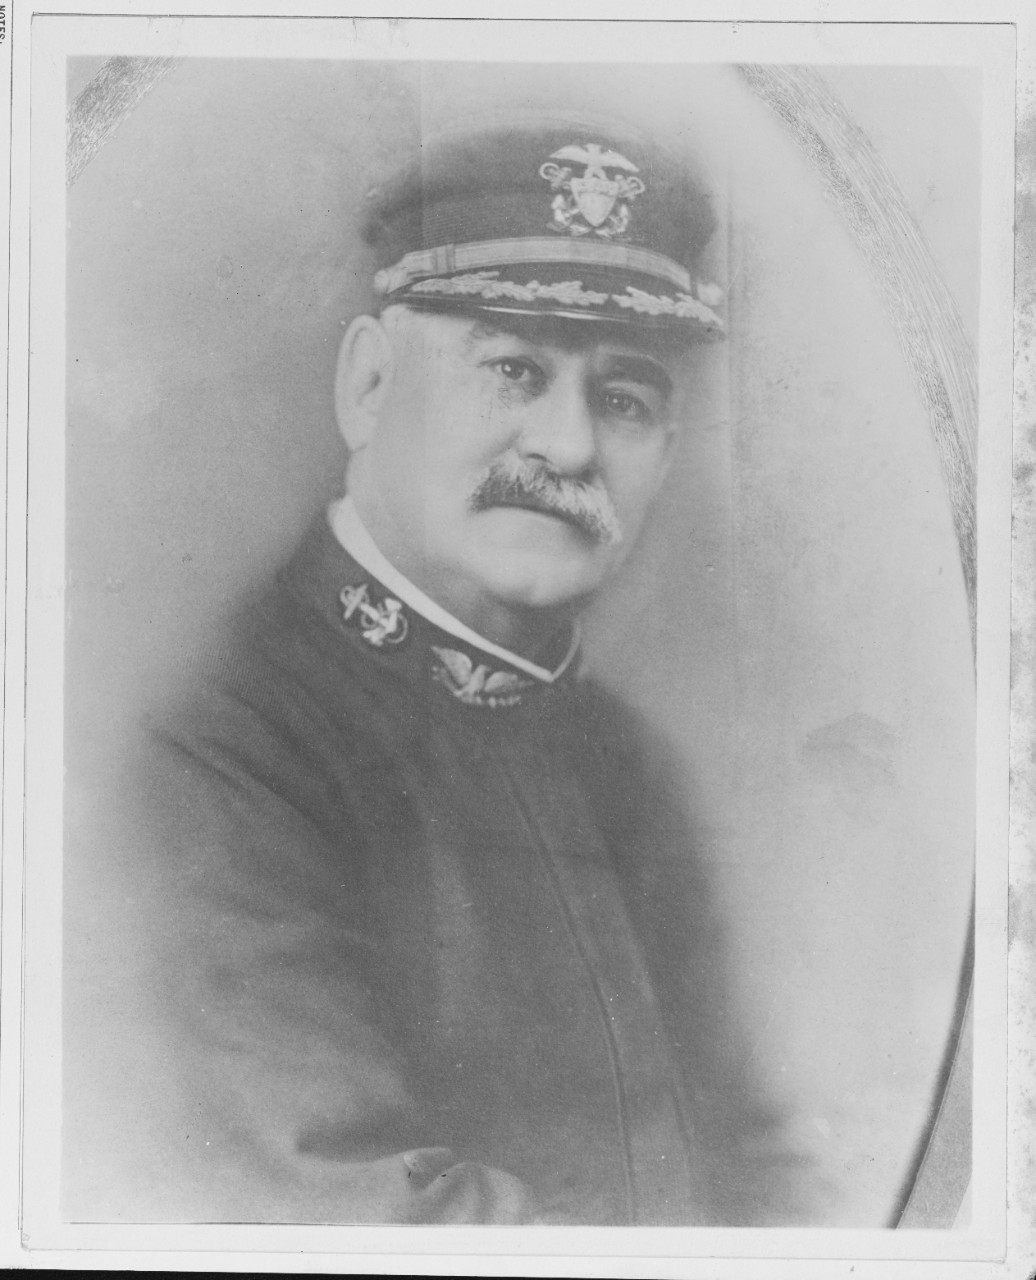 Wilner F. D. Capt, USN.